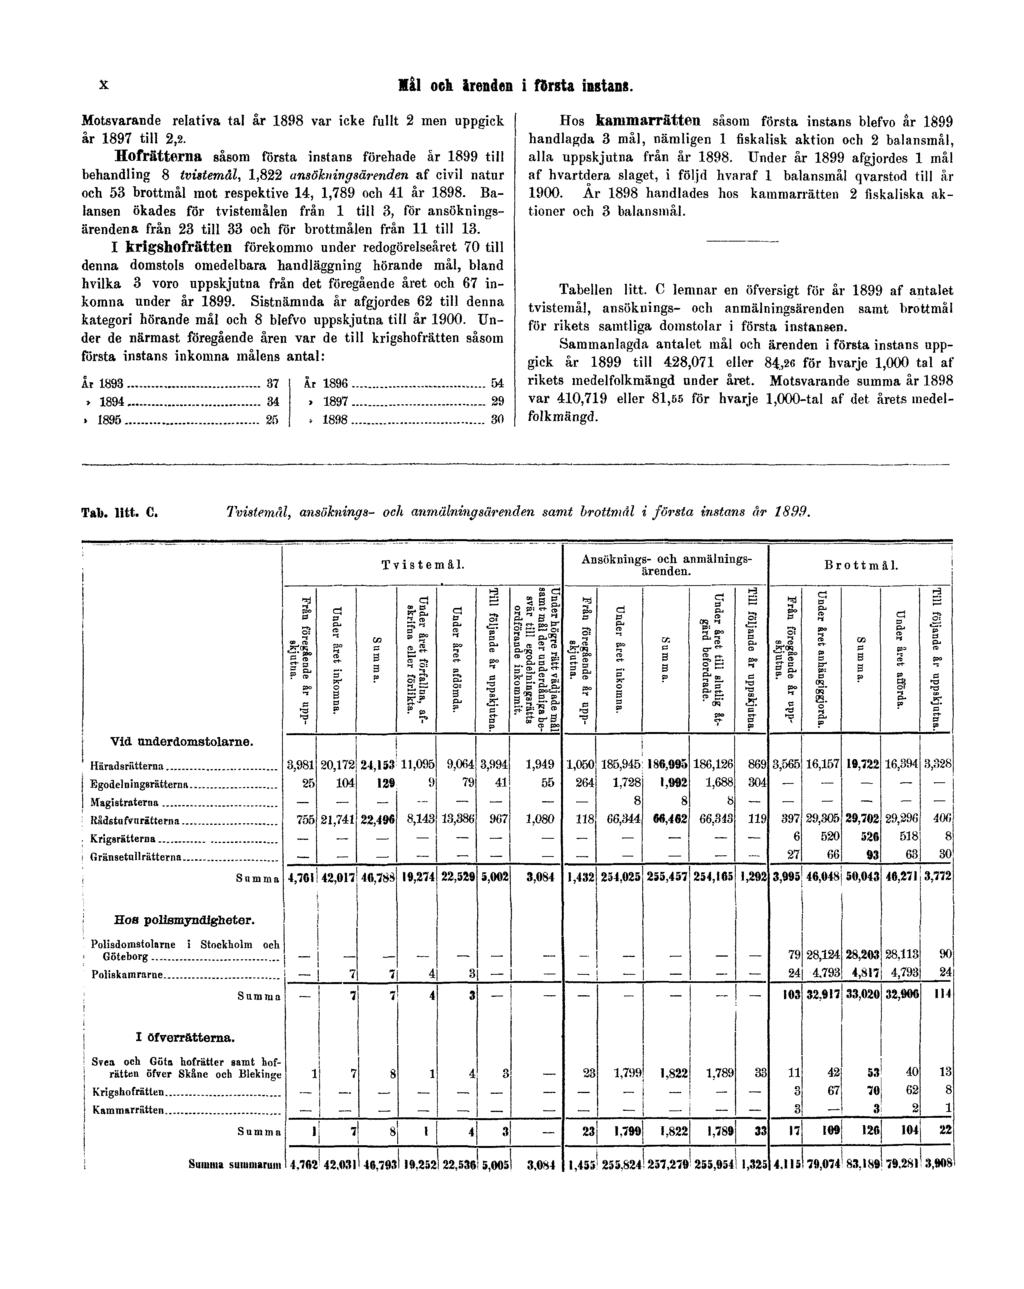 X Mål och ärenden i första instans. Motsvarande relativa tal år 1898 var icke fullt 2 men uppgick år 1897 till 2,2.